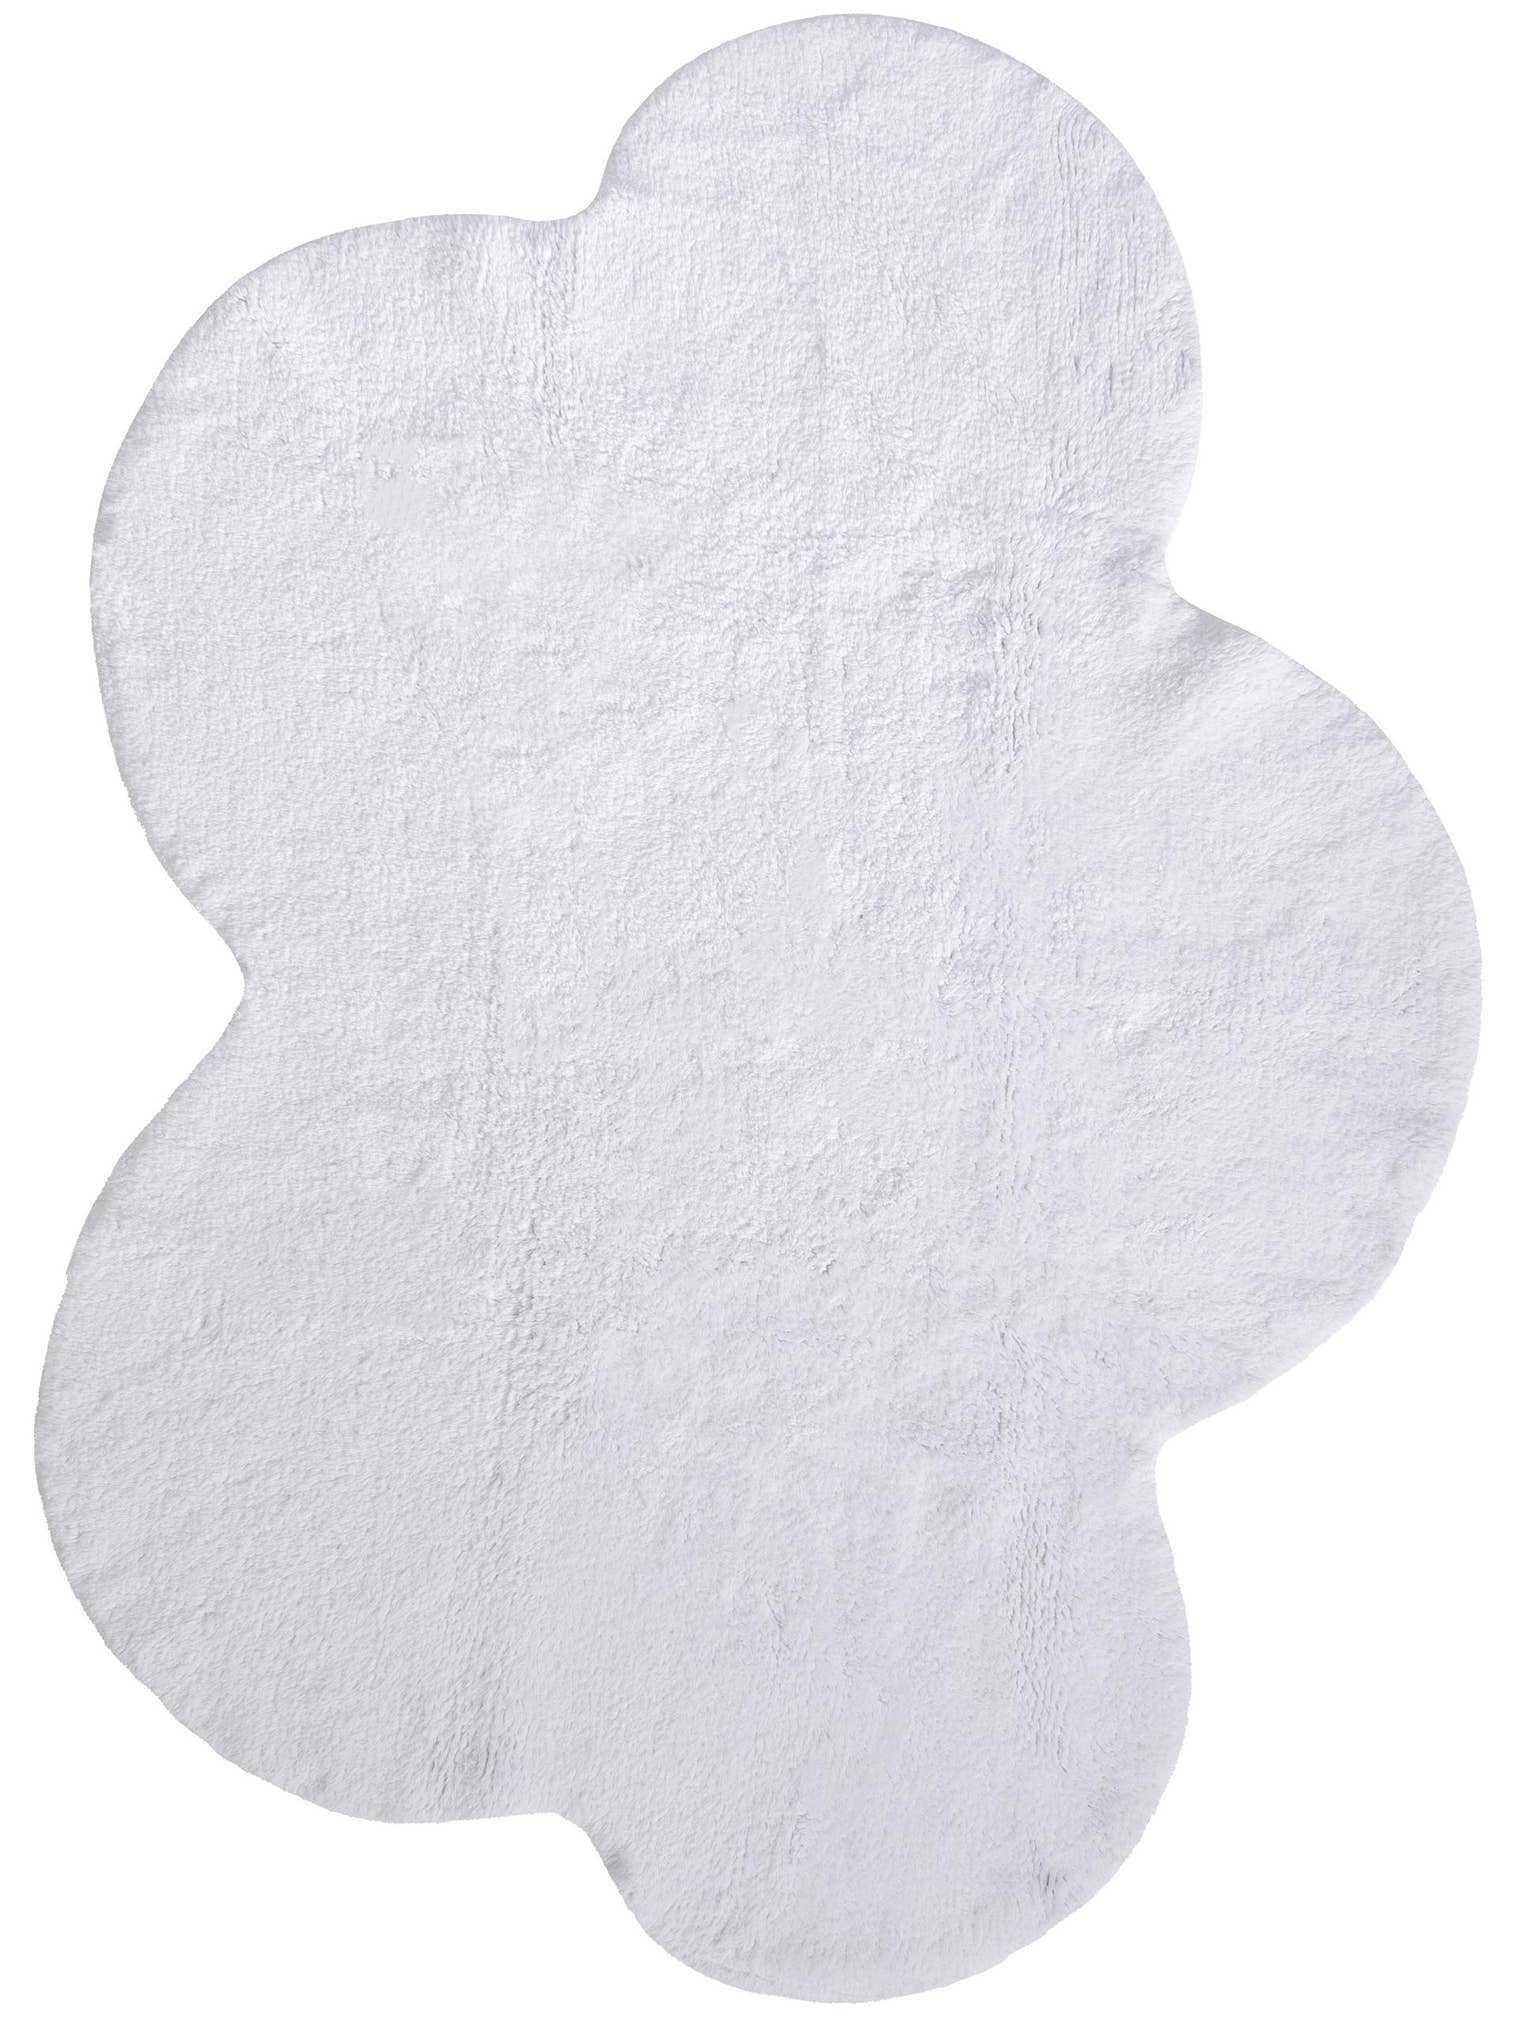 Teppich aus 100% Baumwolle in Weiß mit 11 bis 20 mm hohem Flor von Lytte